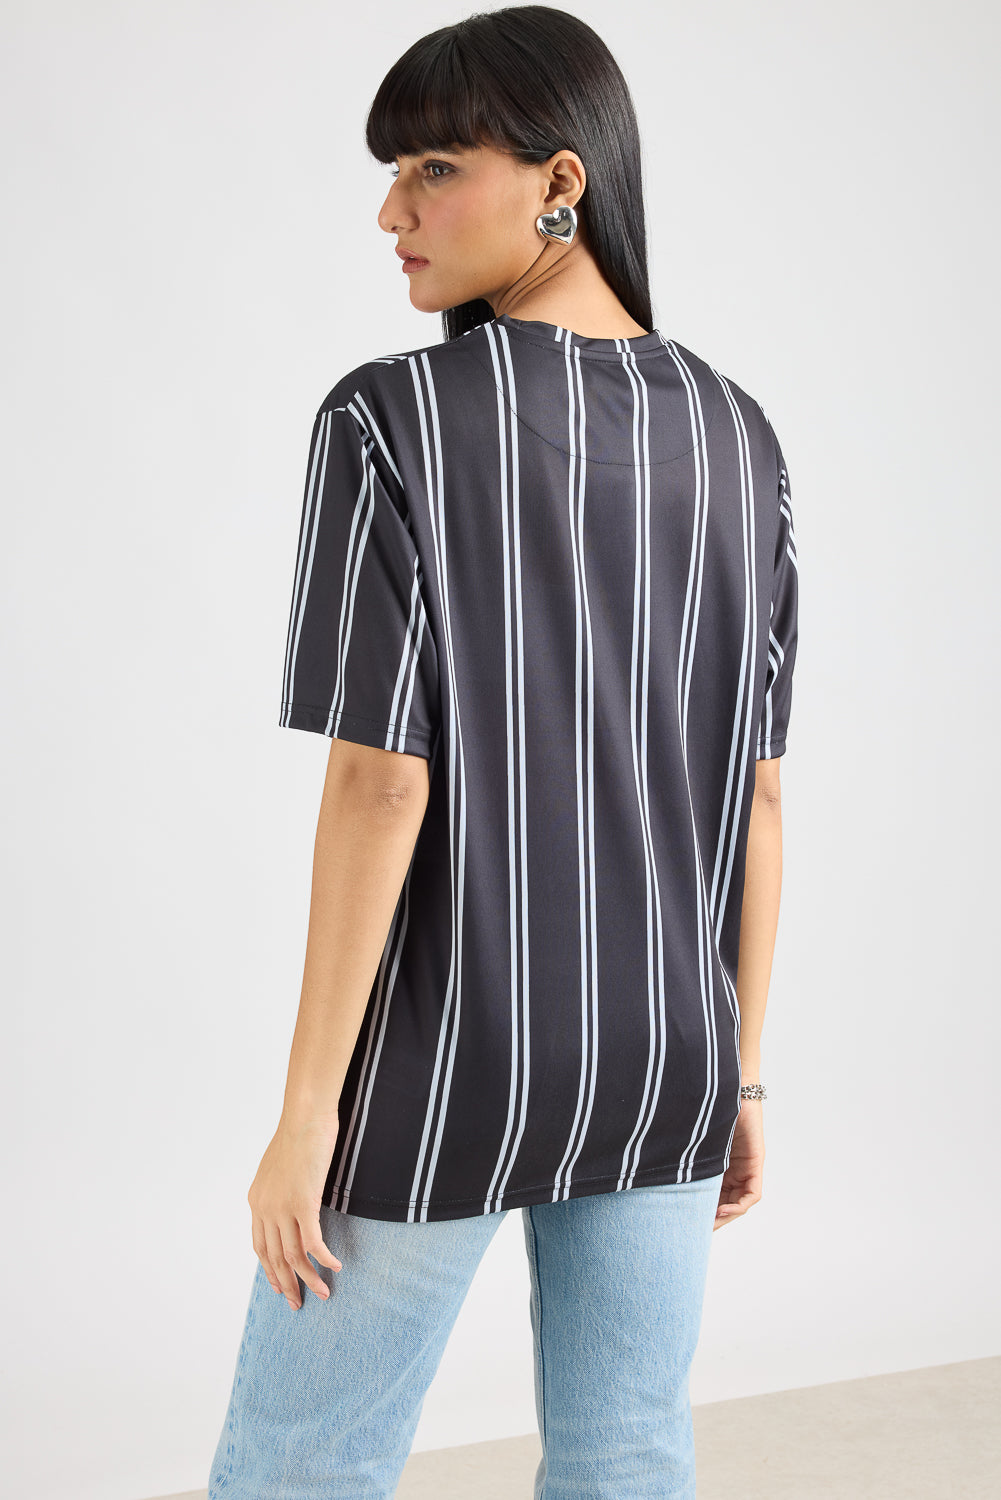 AOP Women's T-shirt - Black/White Stripes